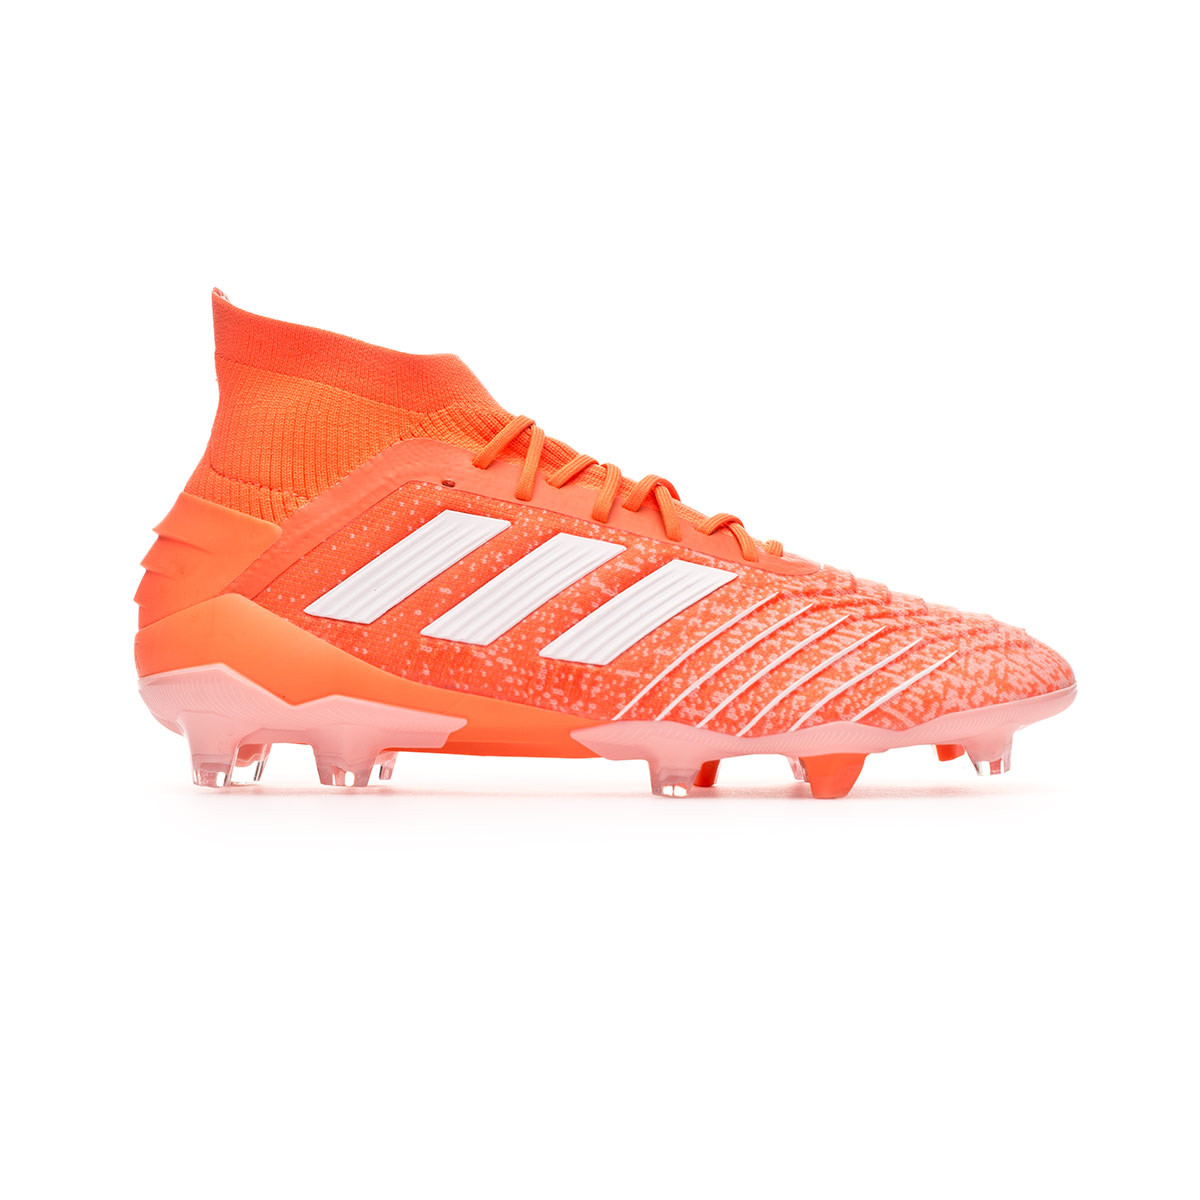 Zapatos de fútbol adidas Predator 19.1 FG Mujer Hi-res coral-White-Glow  pink - Tienda de fútbol Fútbol Emotion